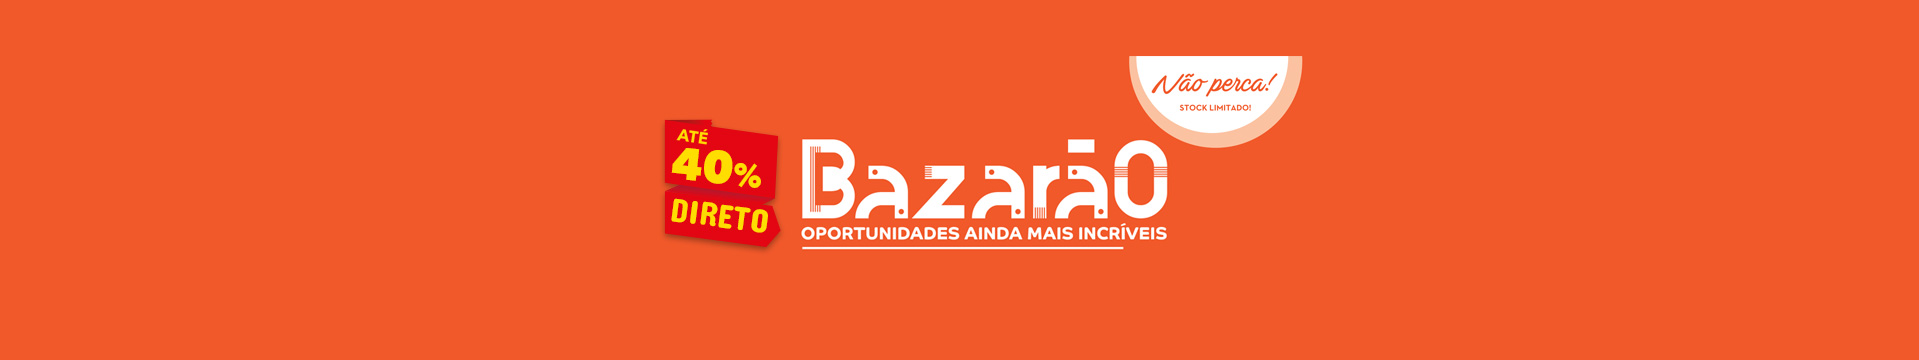 Bazarão